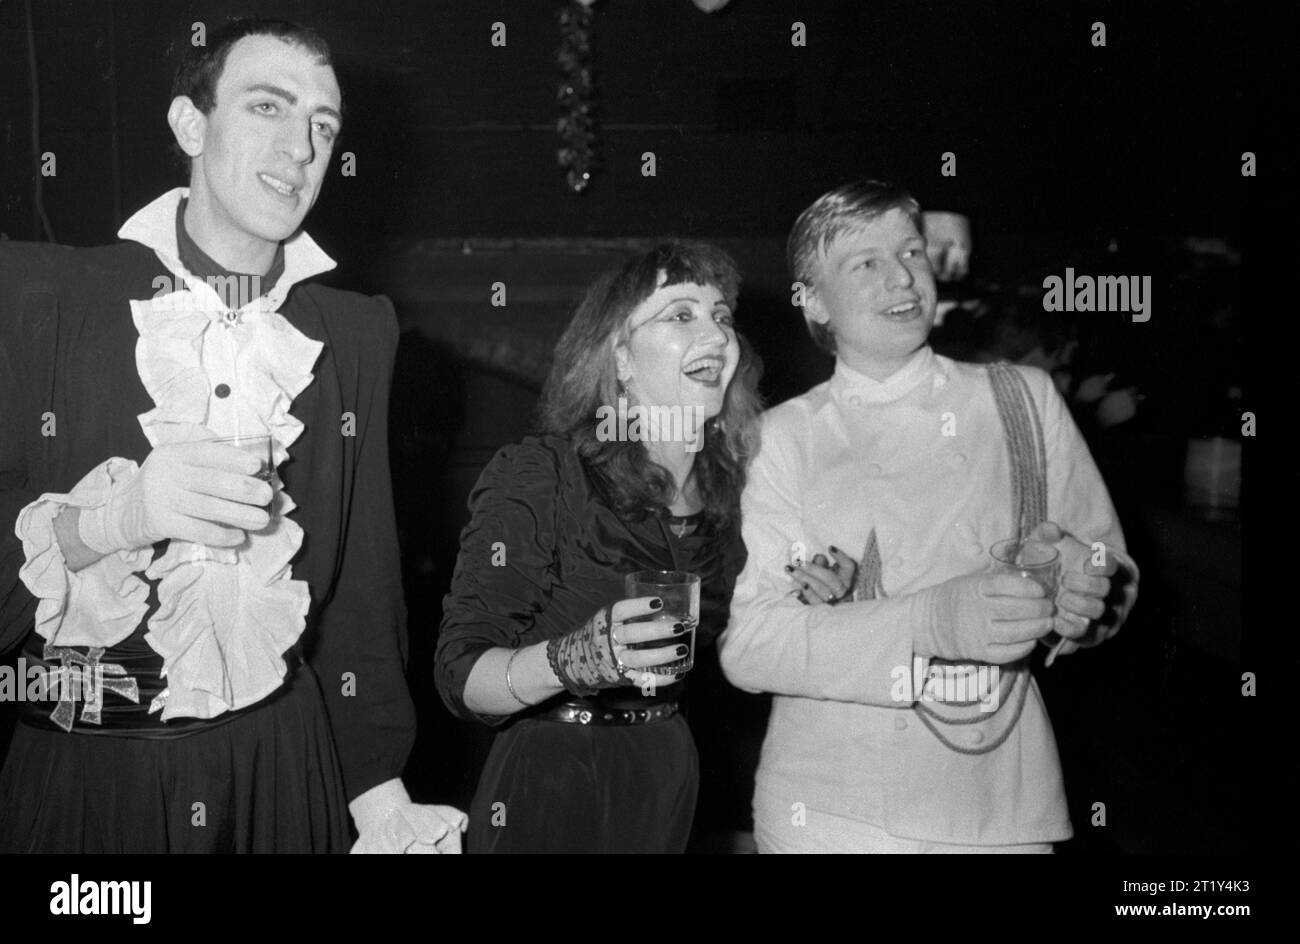 Richard Strange Schauspieler, Schriftsteller, Musiker (L) und Sean Crawford (R) wurde Schauspieler. Er war Mitglied von Tik und Tok, die hier mit Barbie Wilde aus Shock gesehen wurden. Tik und Tok waren ein robotisches Mime- und New Wave-Musikduo. New Romantics, Heaven Nightclub in Villiers Street Charing Cross, London, England Dezember 1980 1980, UK HOMER SYKES Stockfoto